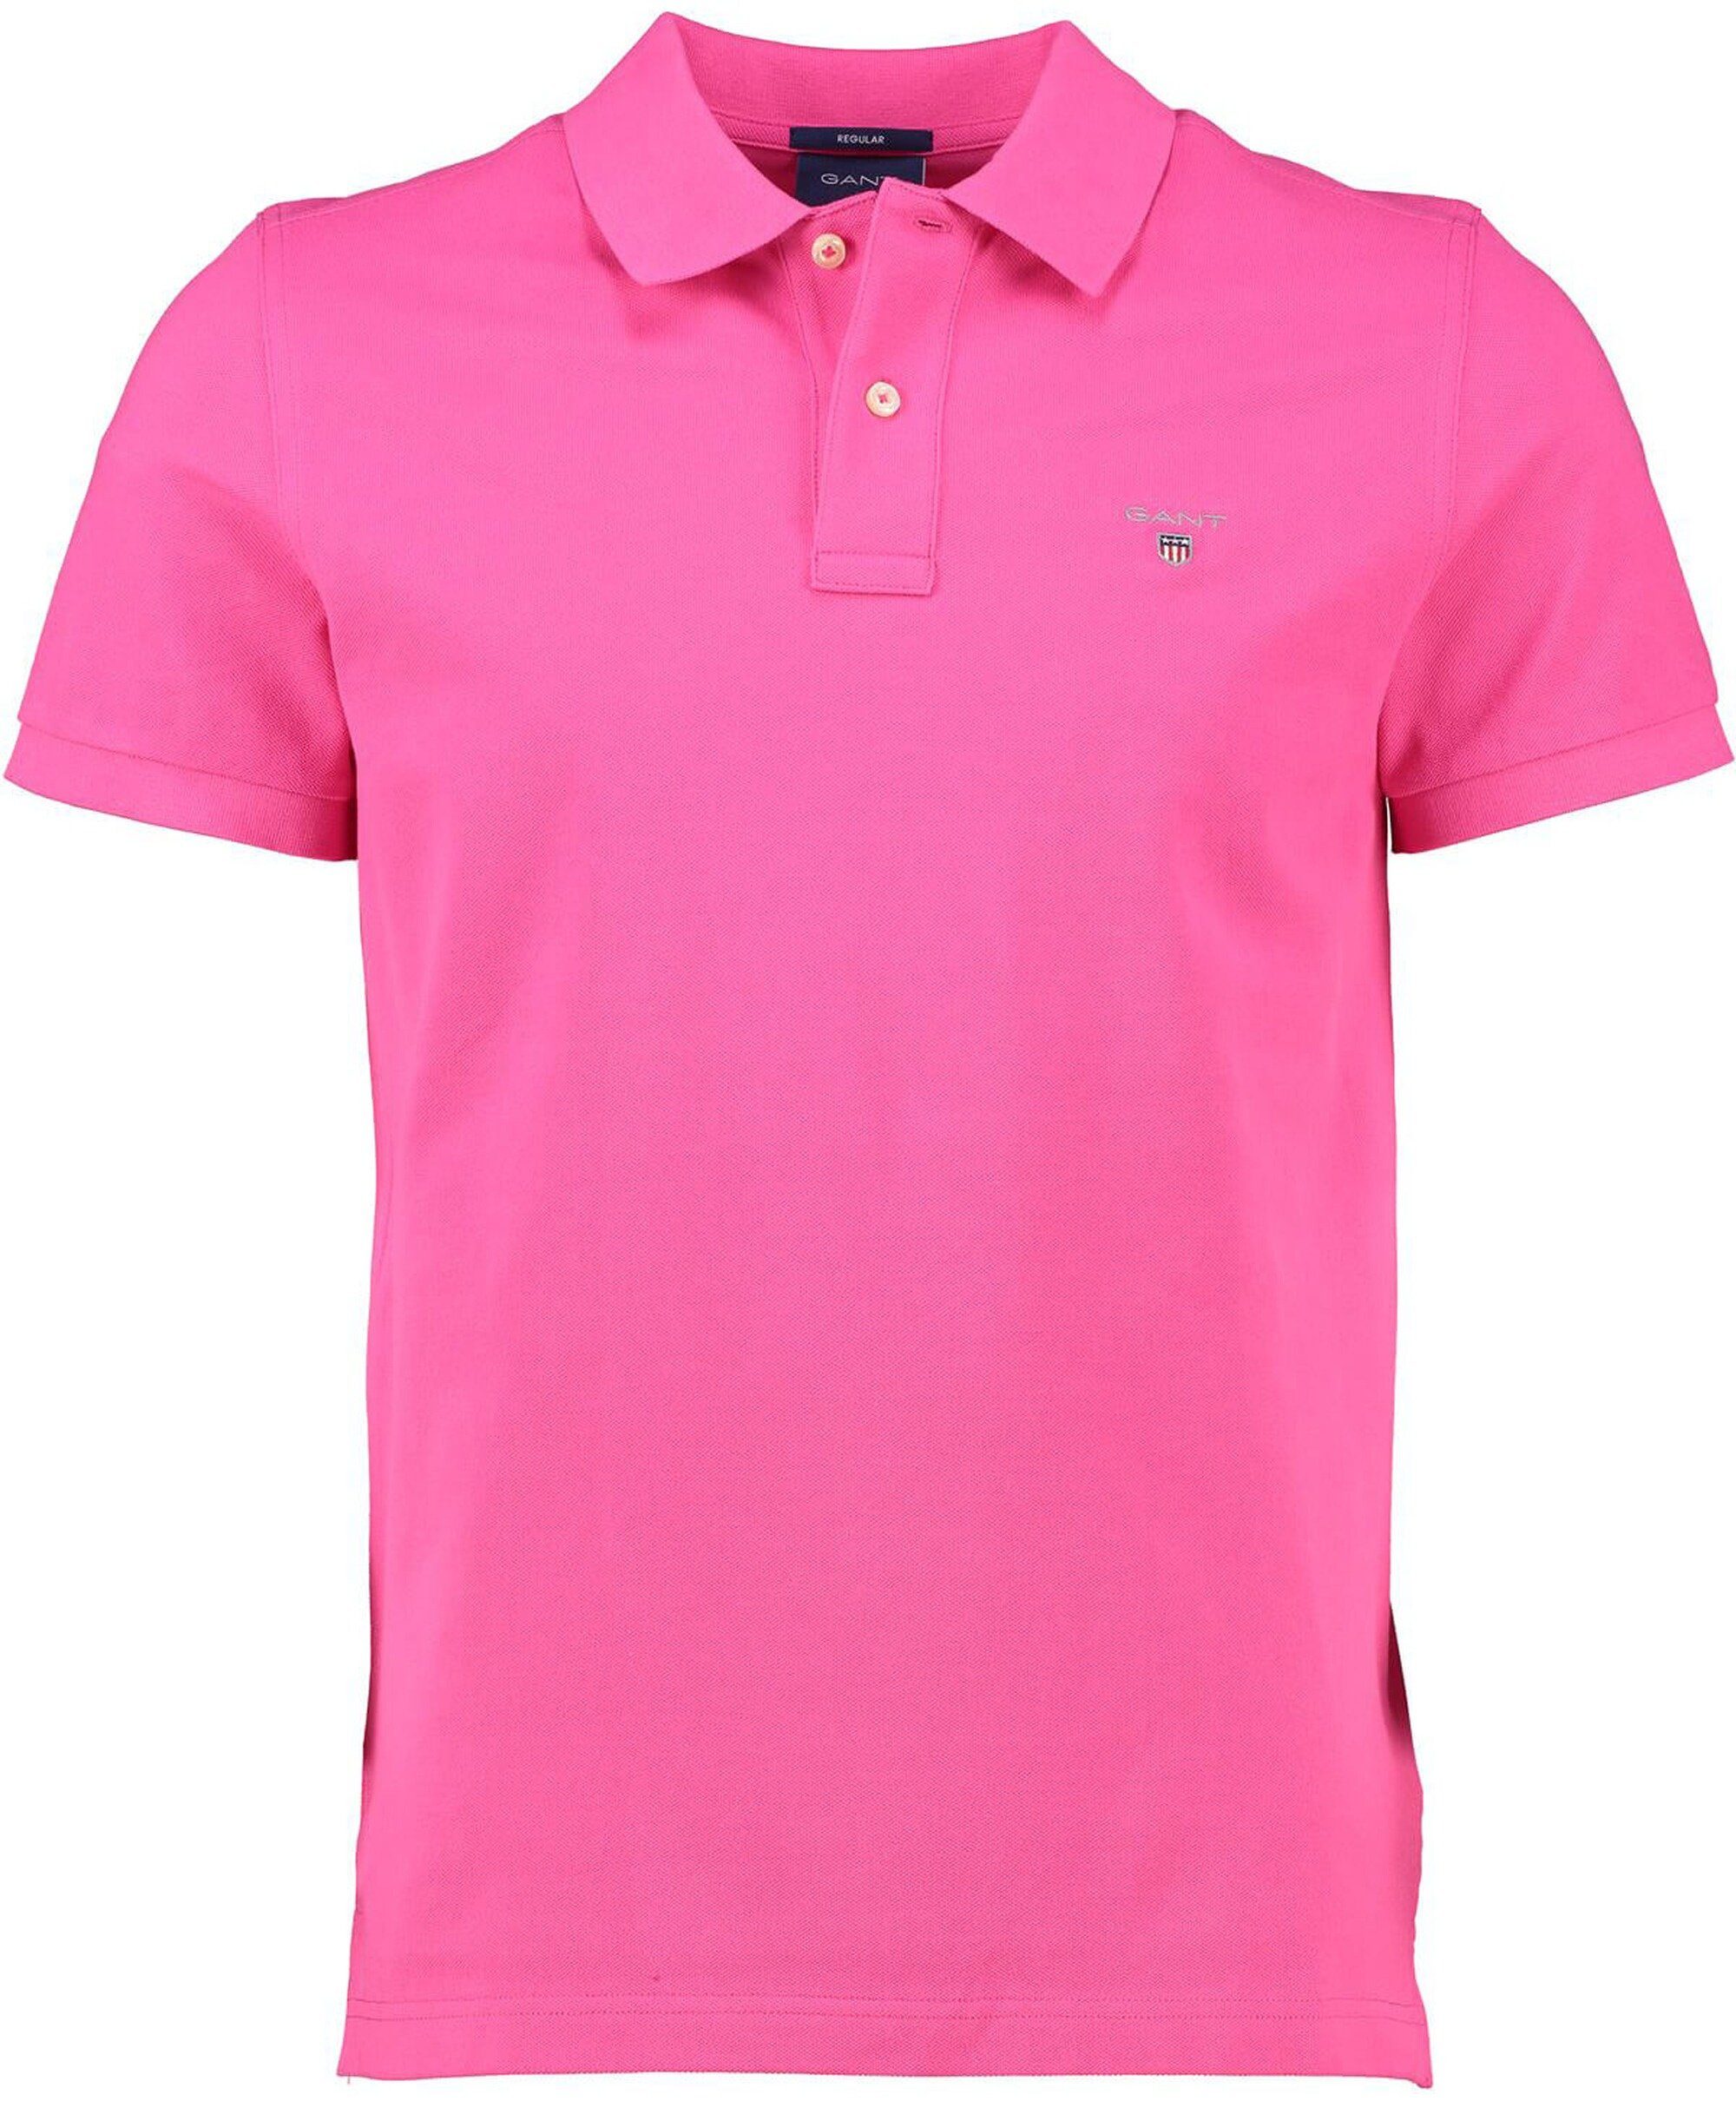 Poloshirt Gant Polo-Shirt Rugger Original hyper pink GANT pink